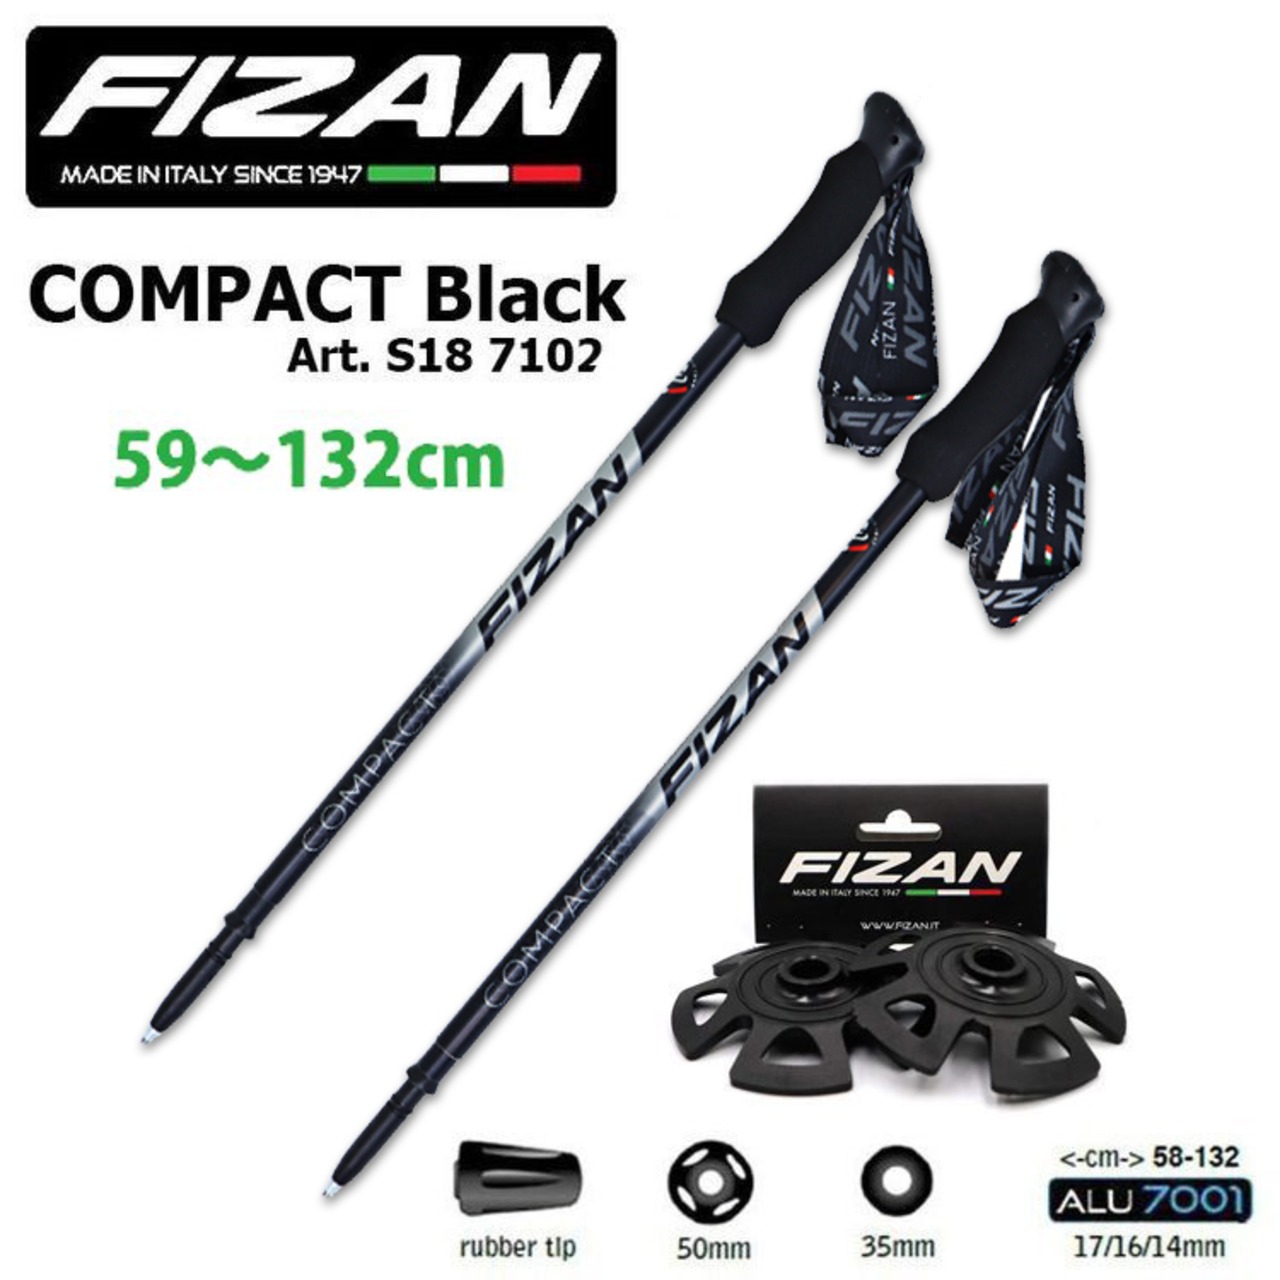 【スノーバスケット Art.B-95 セット】FIZAN トレッキングポール COMPACT Black コンパクトブラック 可変3段 59-132cm 2本セット